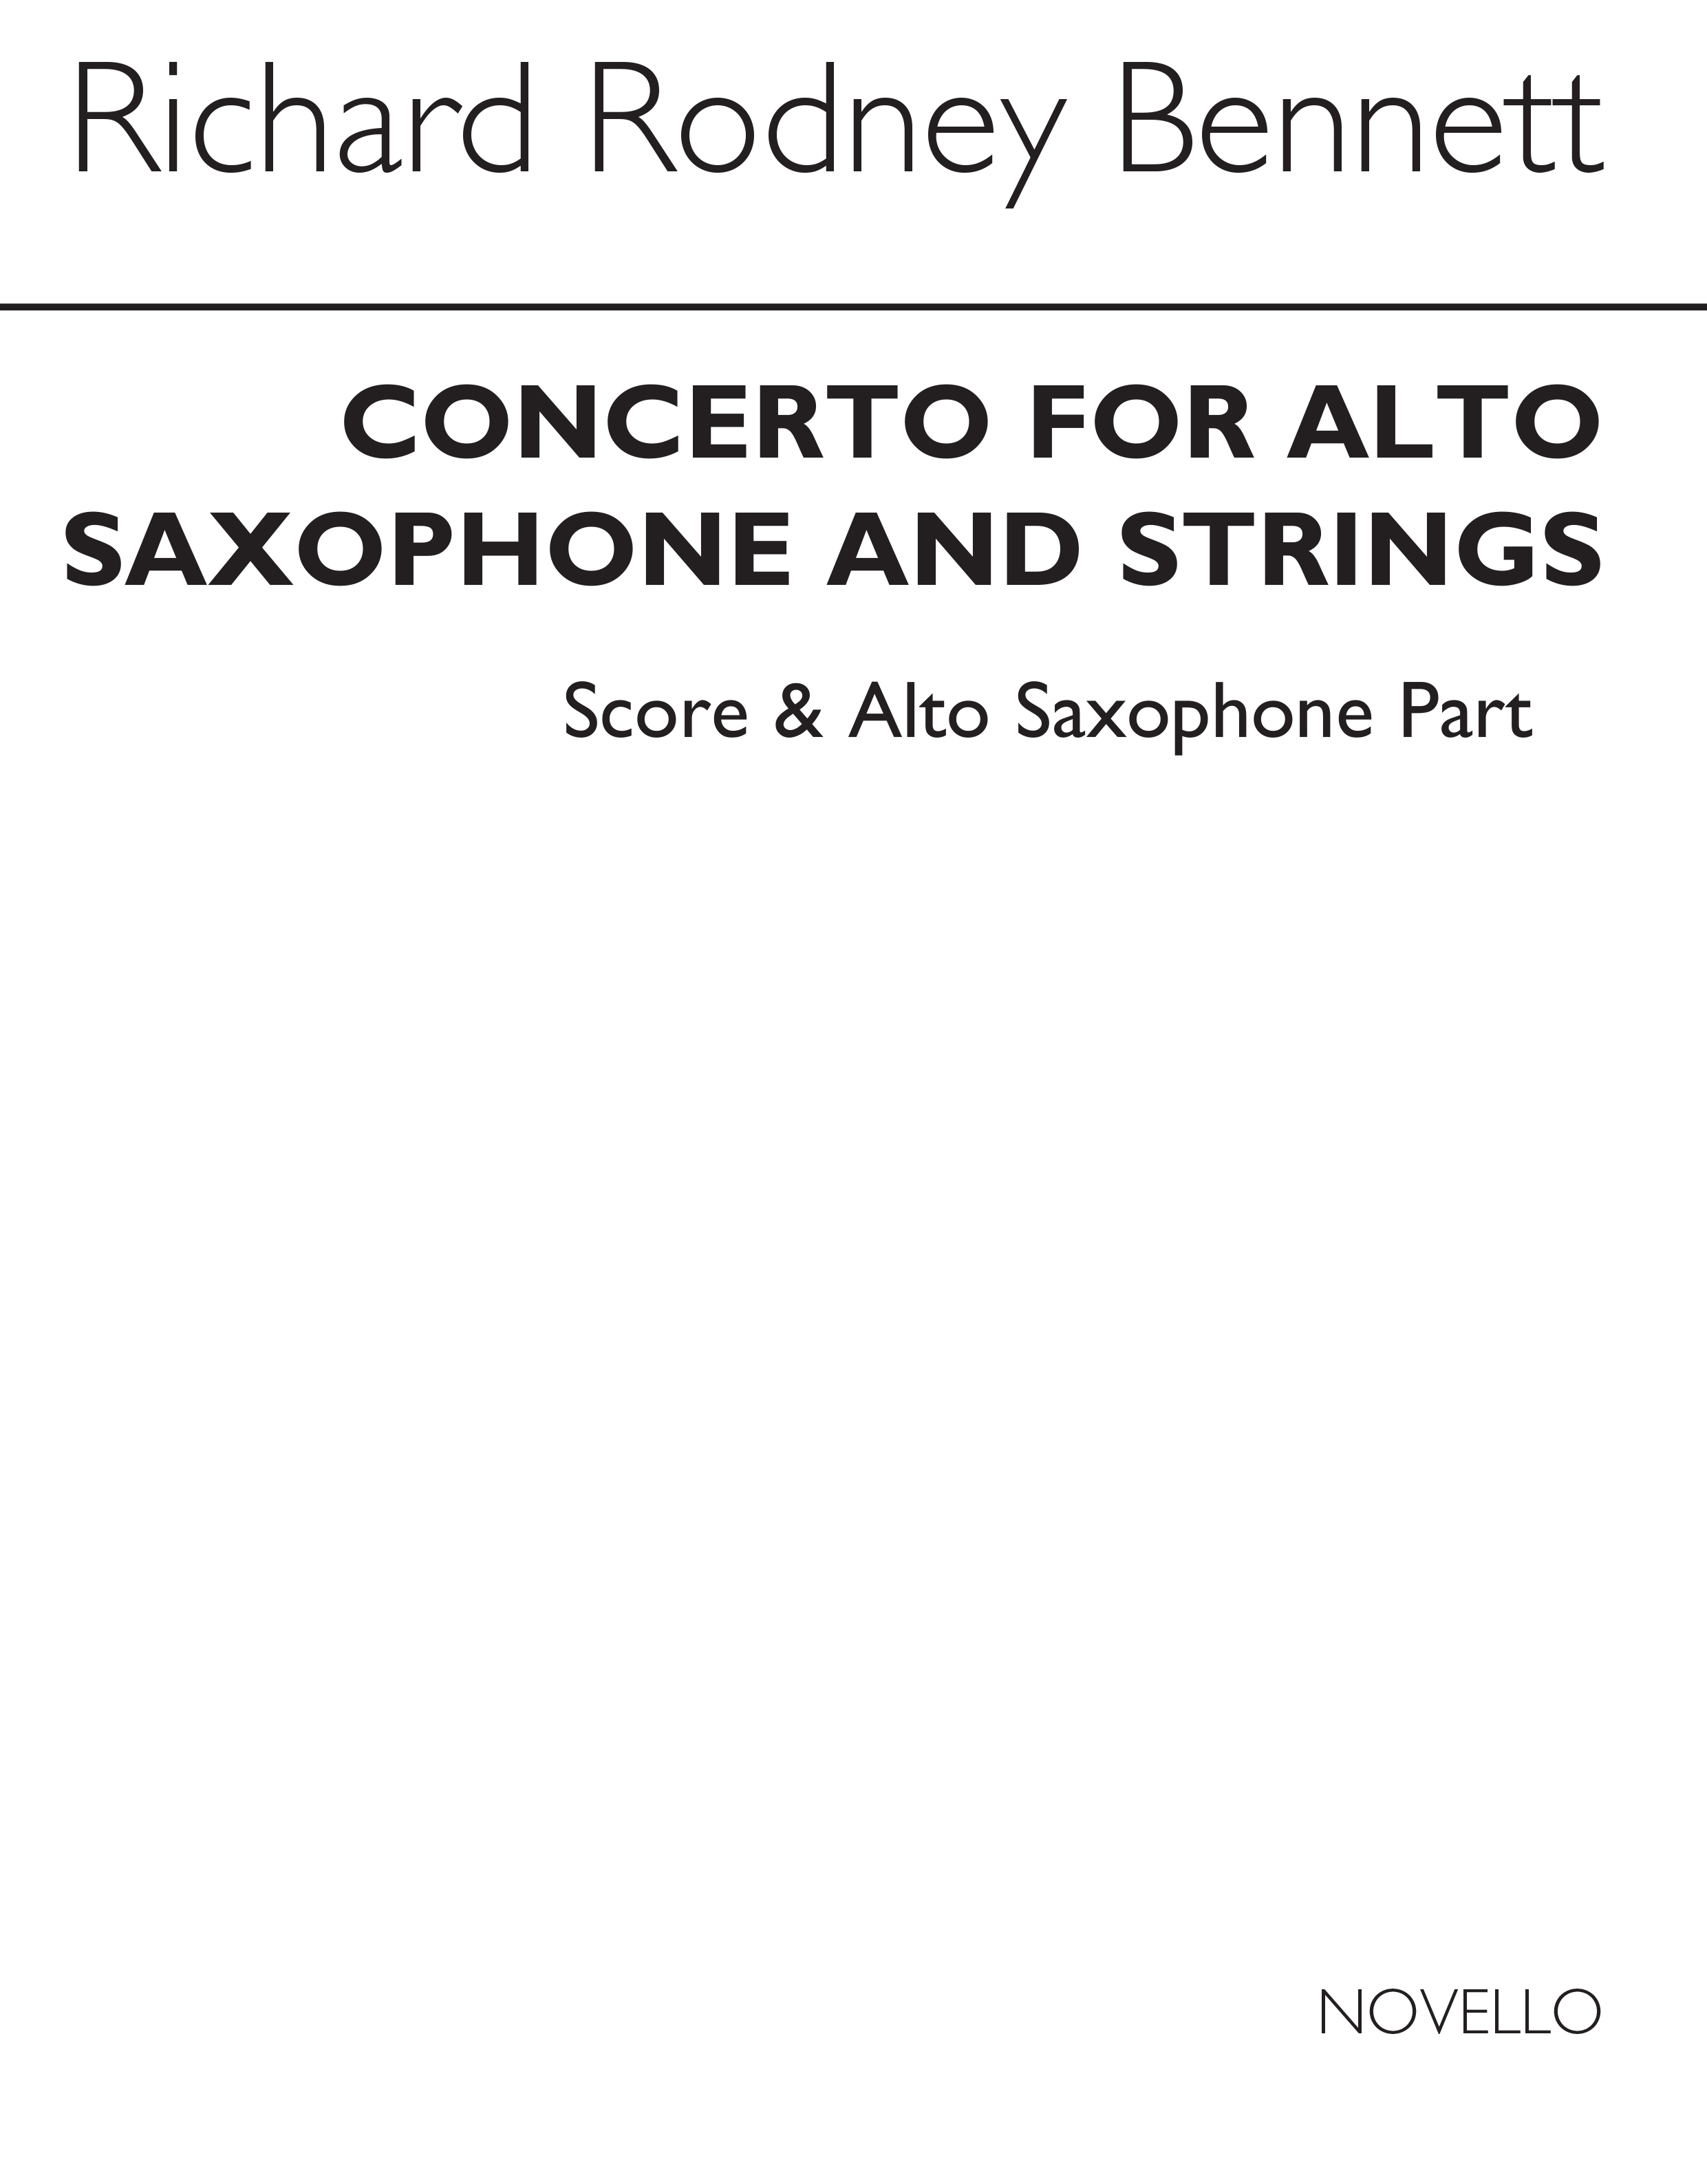 Richard Rodney Bennett: Saxophone Concerto For Alto Sax And Piano: Alto